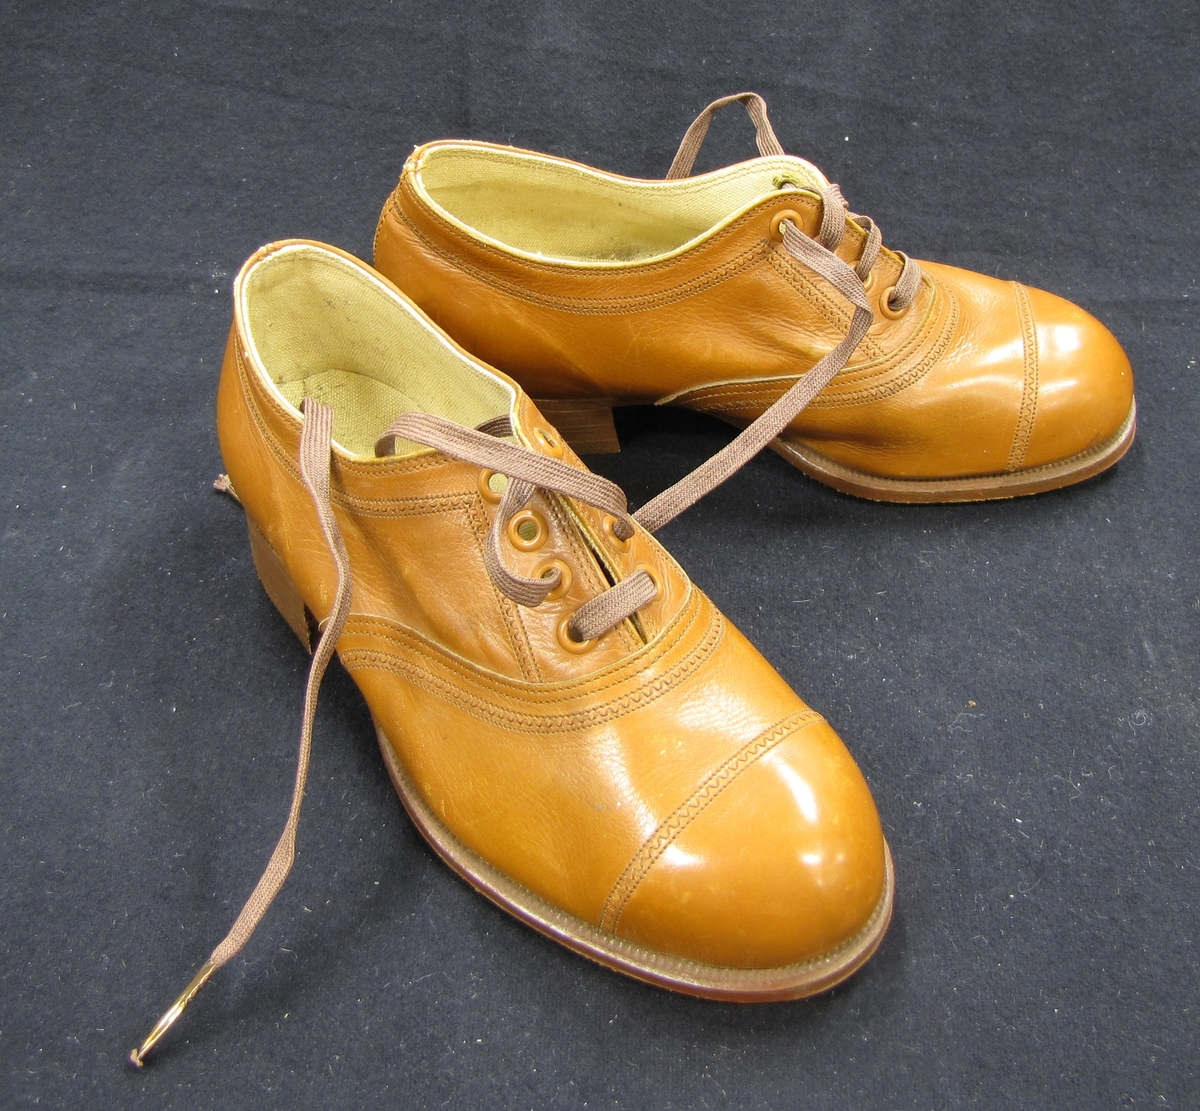 Ett par skor, barnskor, med snörning. Skorna är bruna och på sulans utsida är skorna märkta med A. F. Carlssons skofabriks sigill.